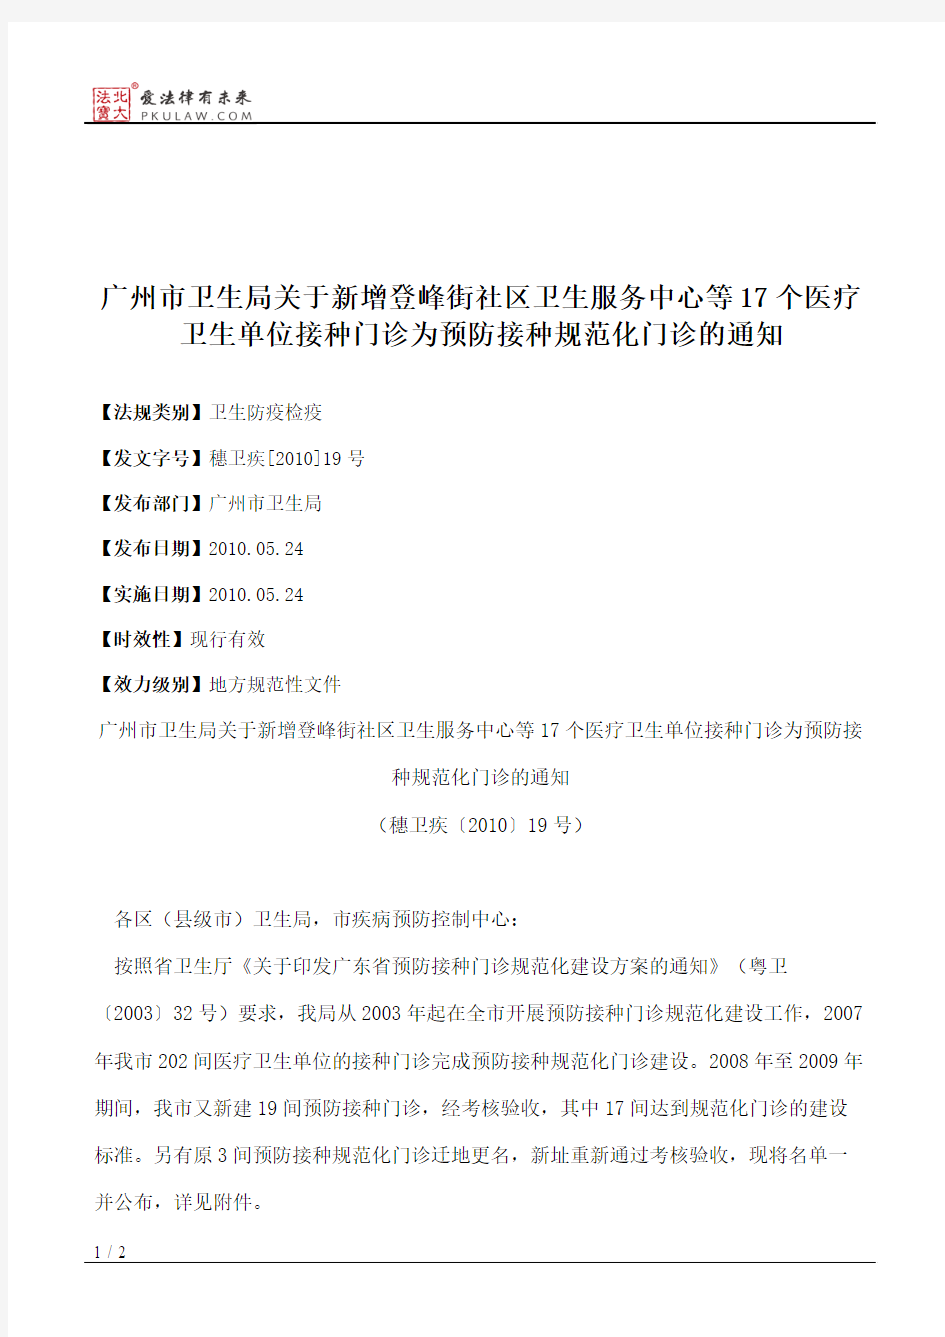 广州市卫生局关于新增登峰街社区卫生服务中心等17个医疗卫生单位